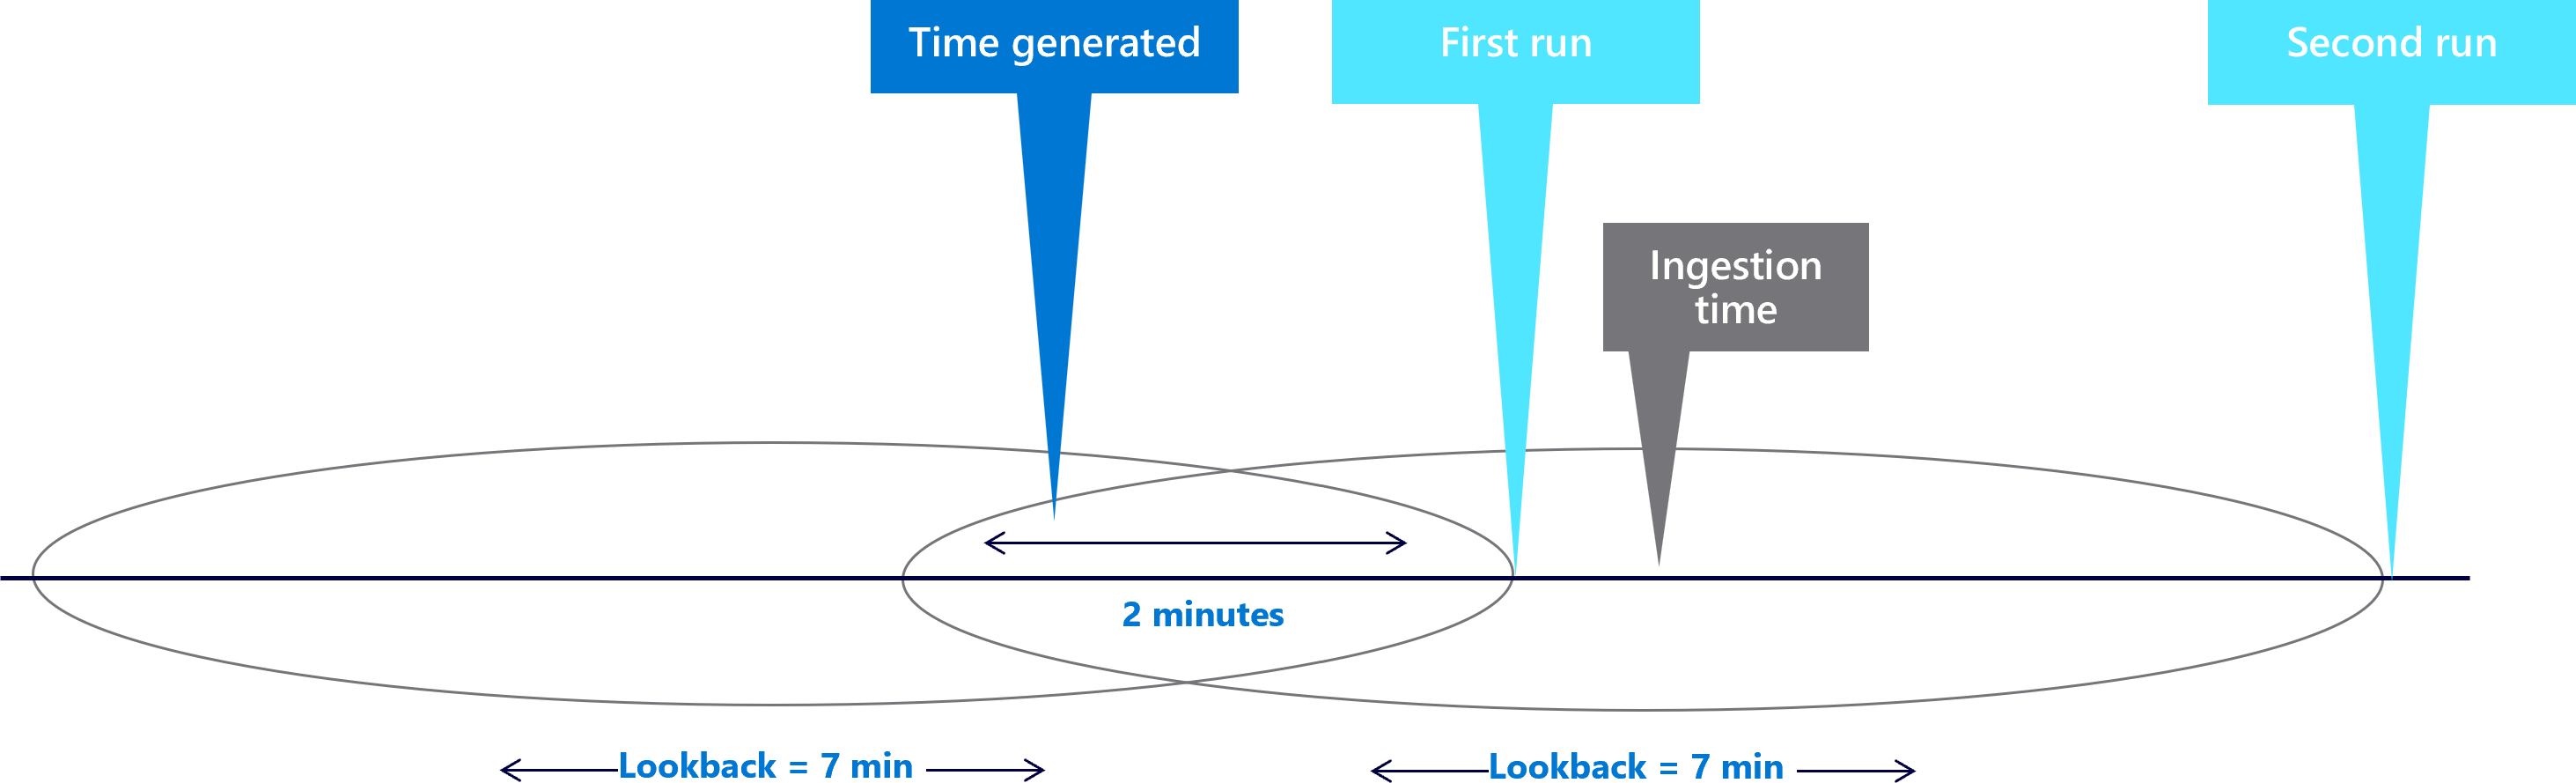 Diagrama que muestra ventanas de búsqueda de siete minutos con un retraso de dos minutos.